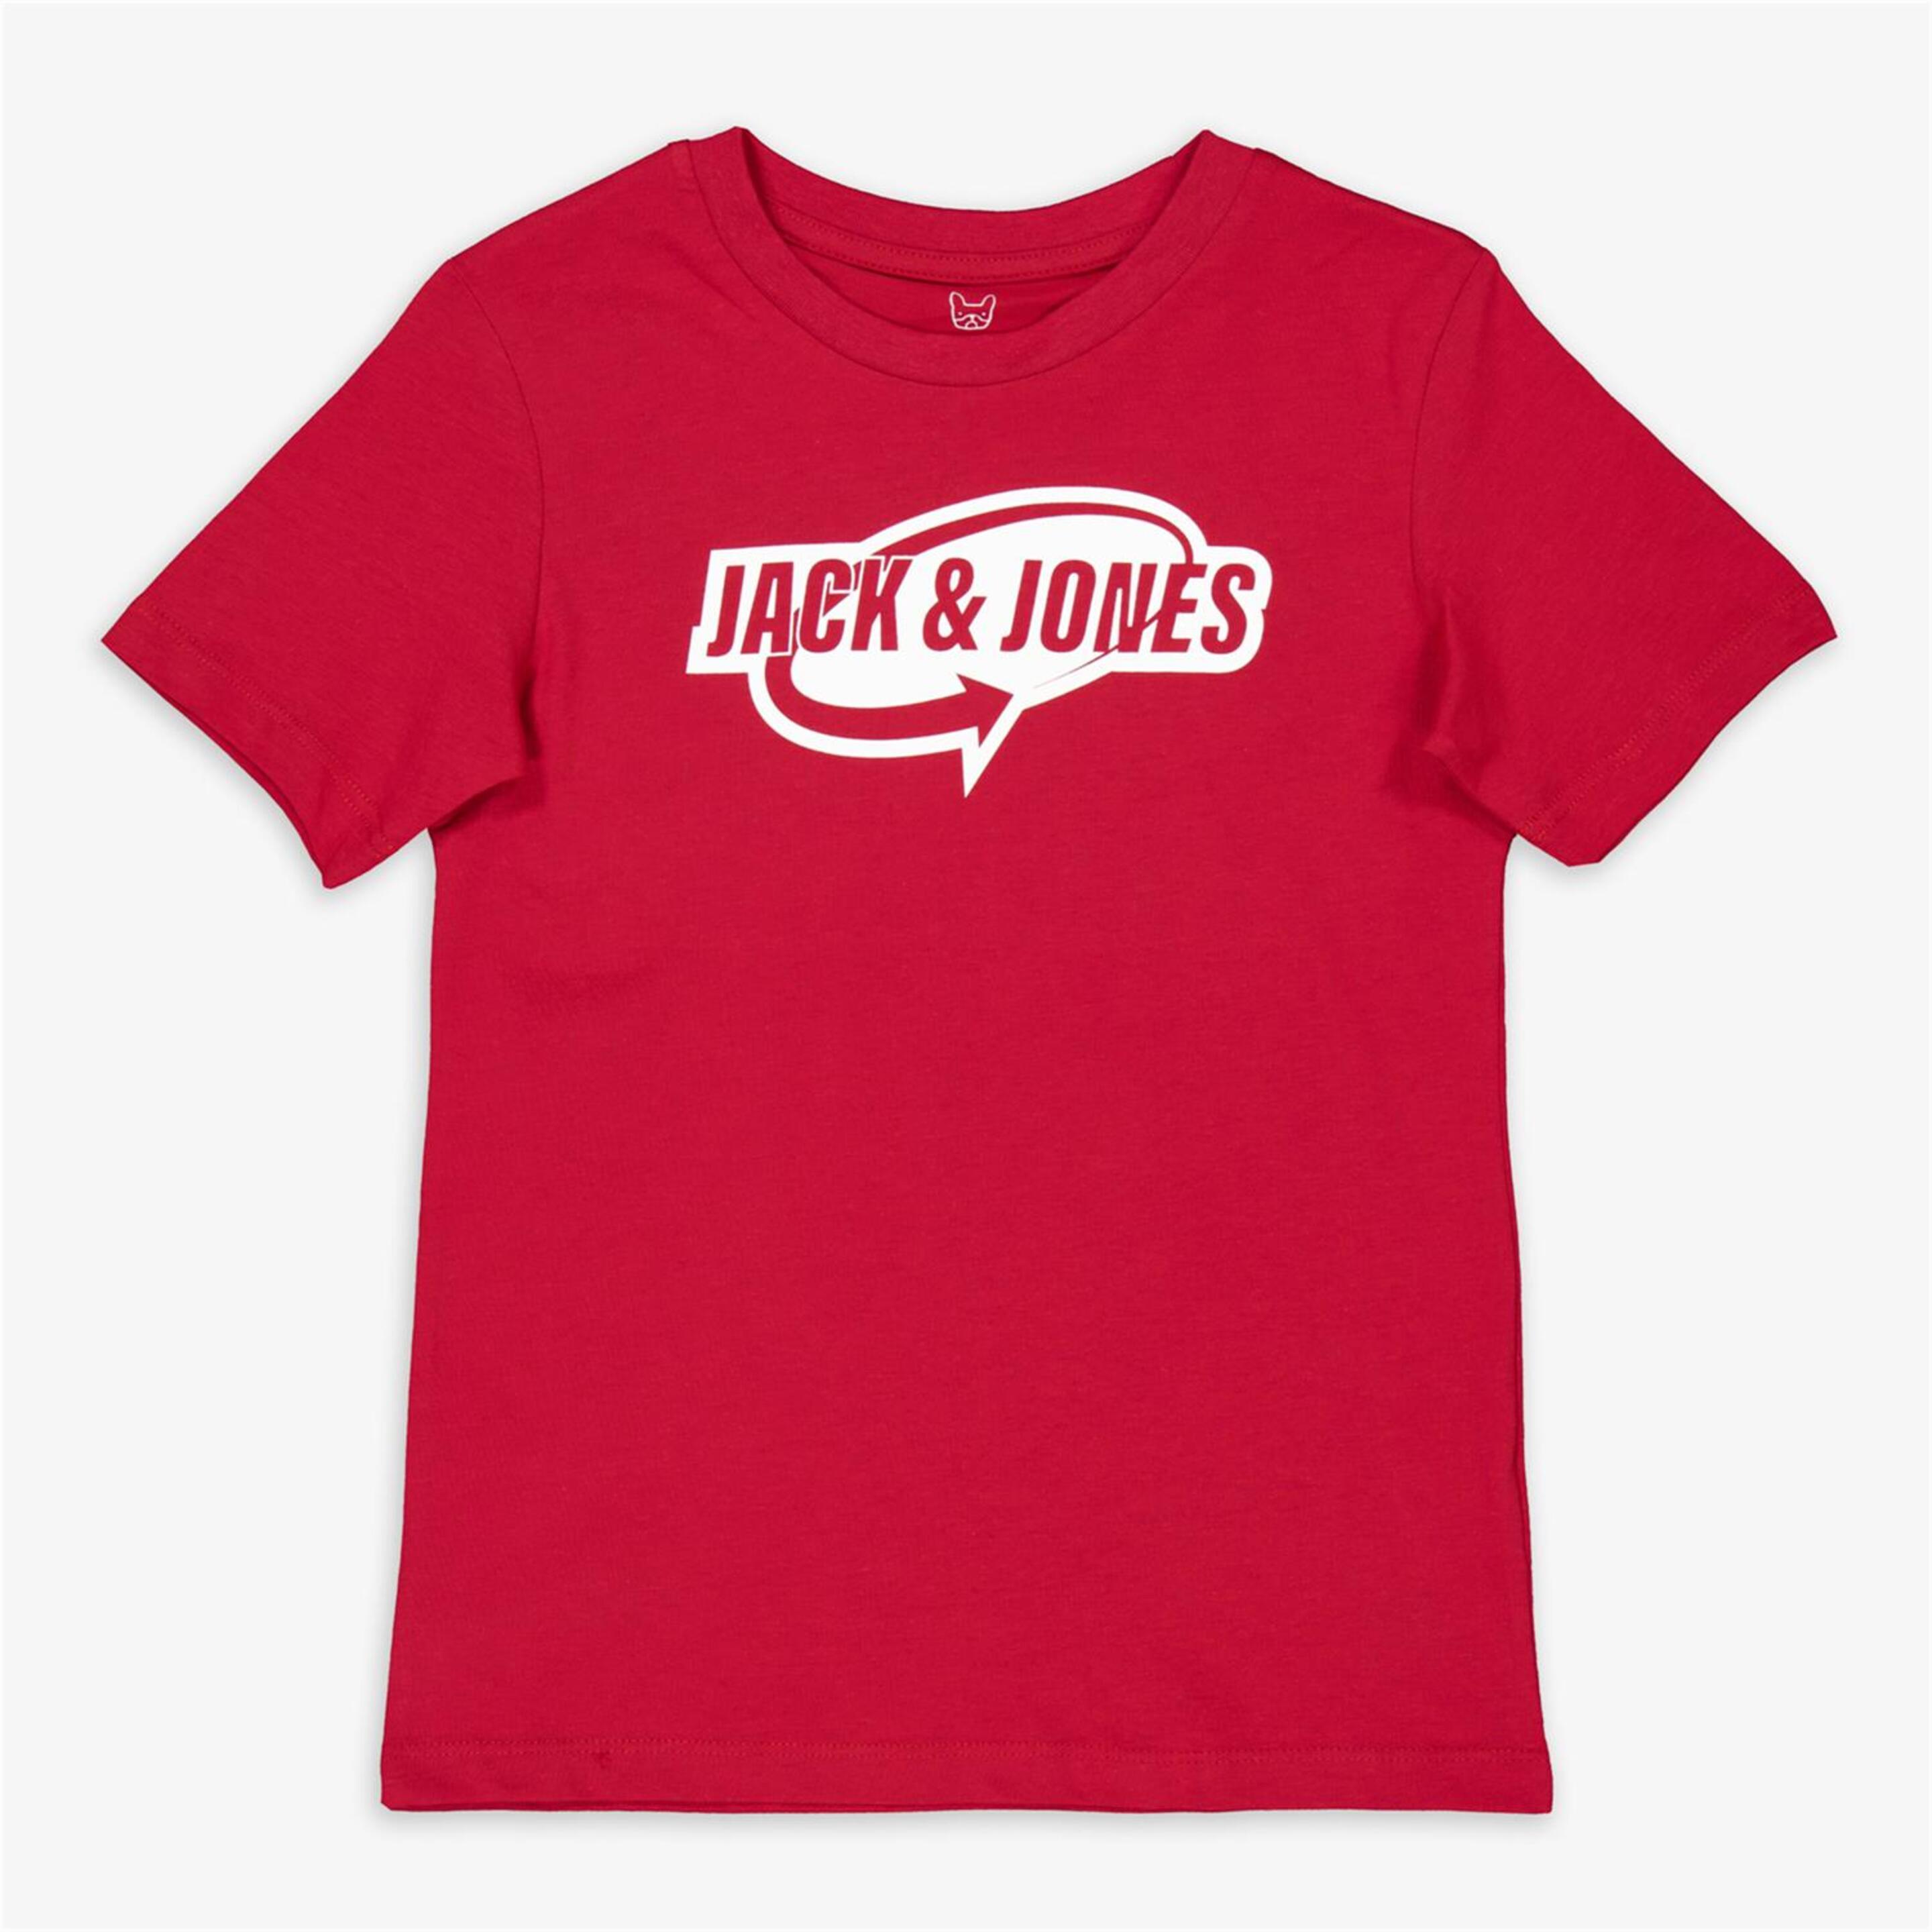 Jack & Jones - rojo - Camiseta Niño